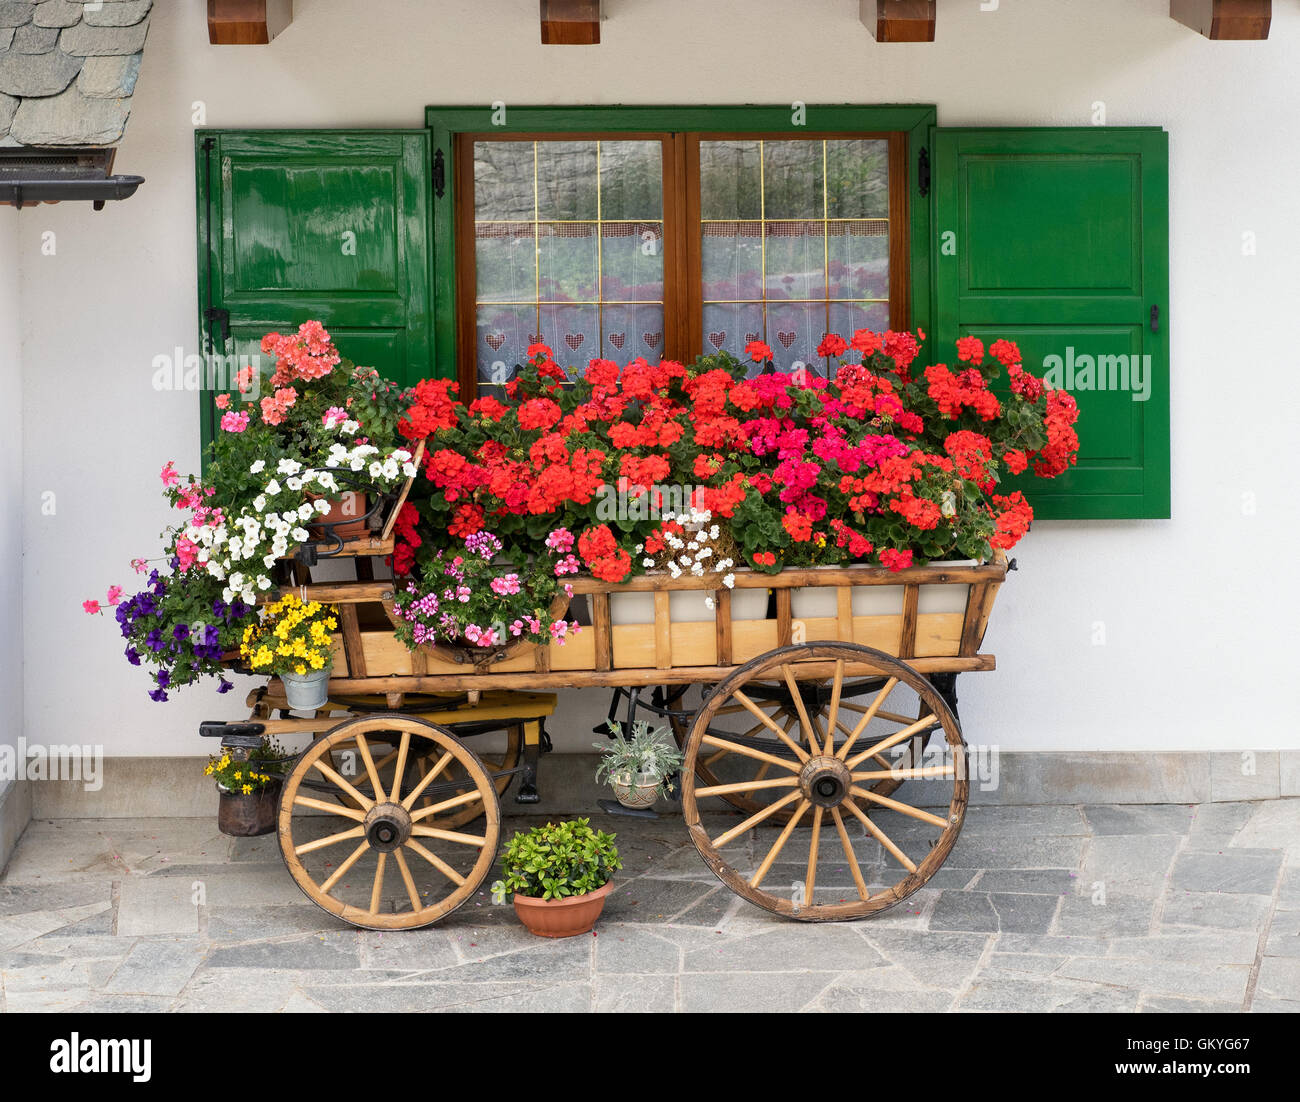 Decorativos de madera del carro lleno de coloridas flores y plantas en macetas de verano Foto de stock